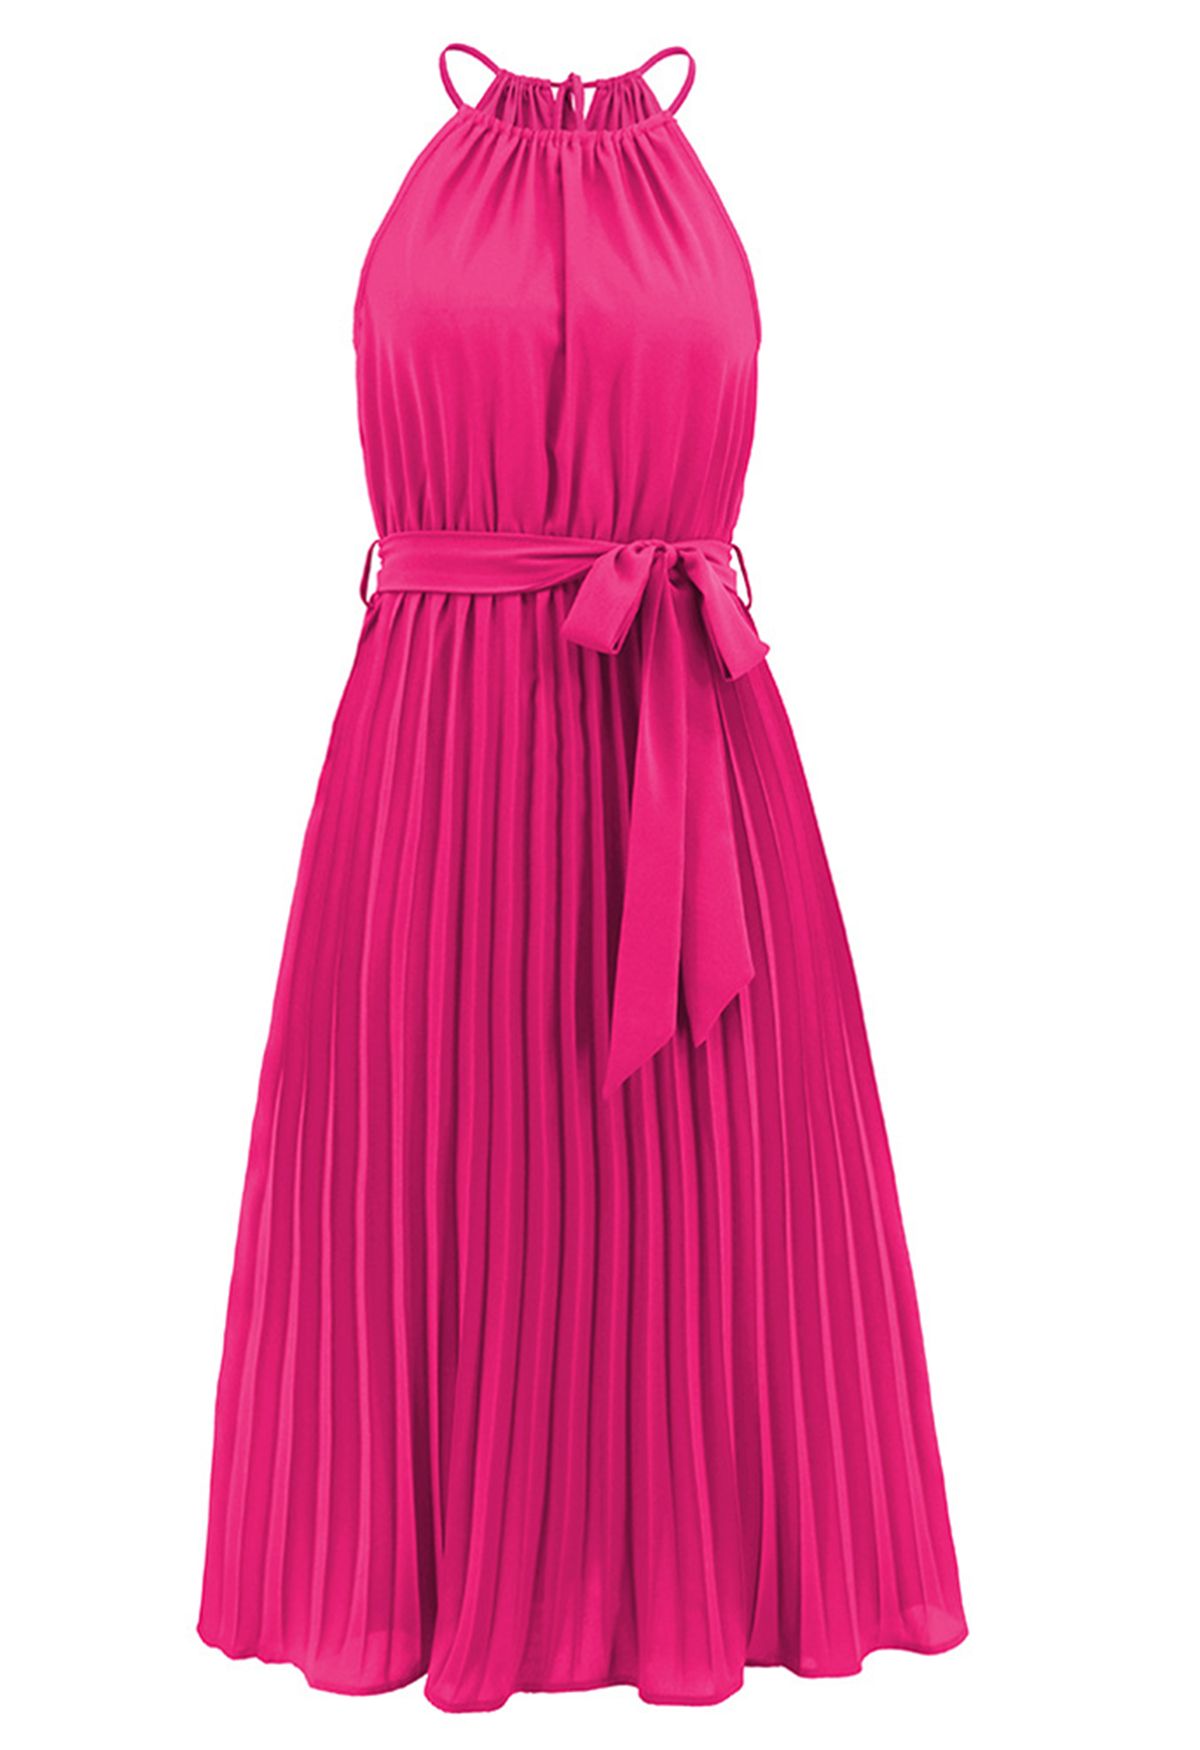 فستان برباط حول الرقبة ورباط الخصر مطوي باللون الوردي الفاتح